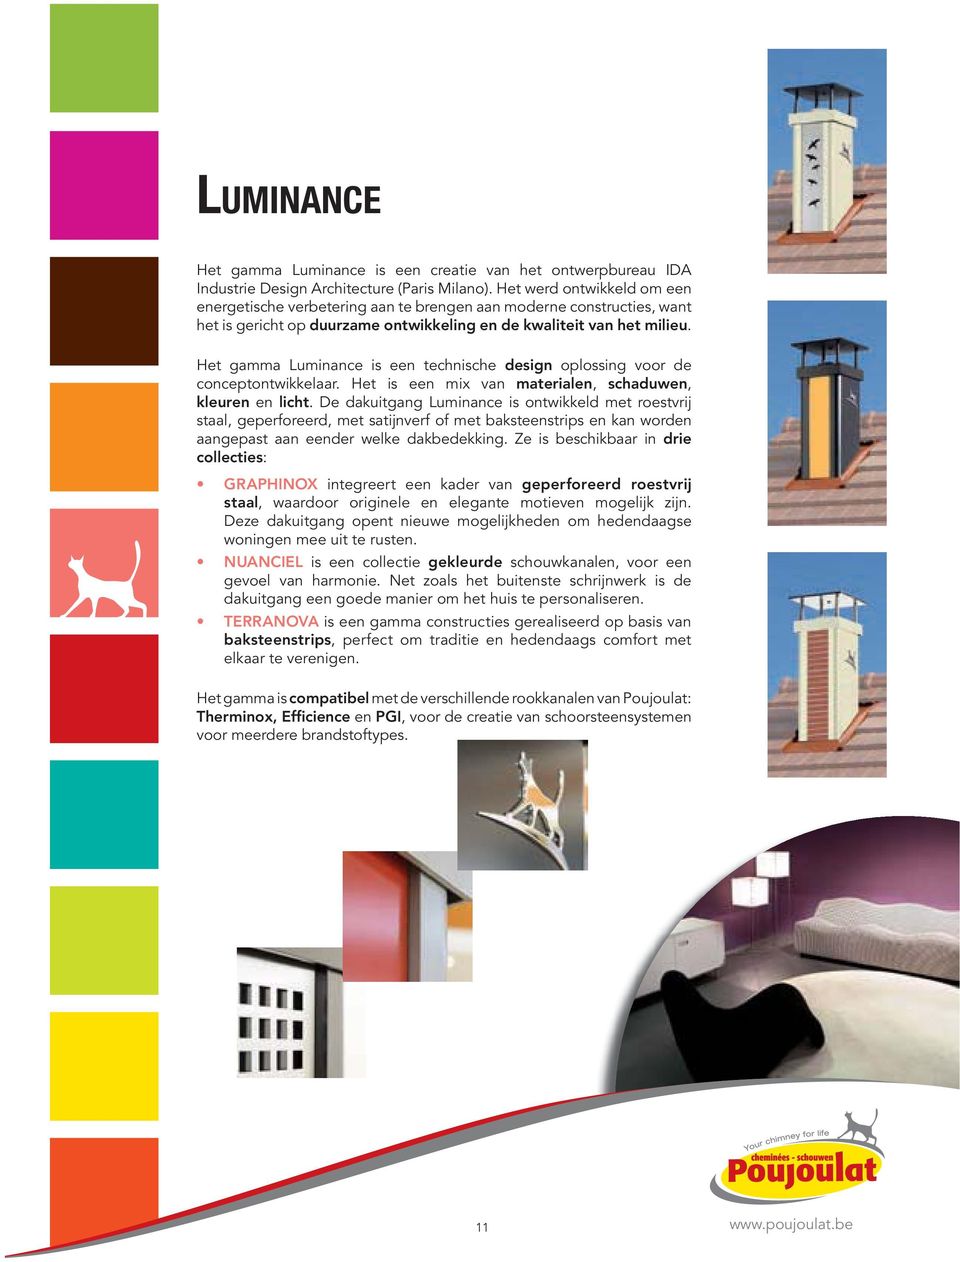 Het gamma Luminance is een technische design oplossing voor de conceptontwikkelaar. Het is een mix van materialen, schaduwen, kleuren en licht.